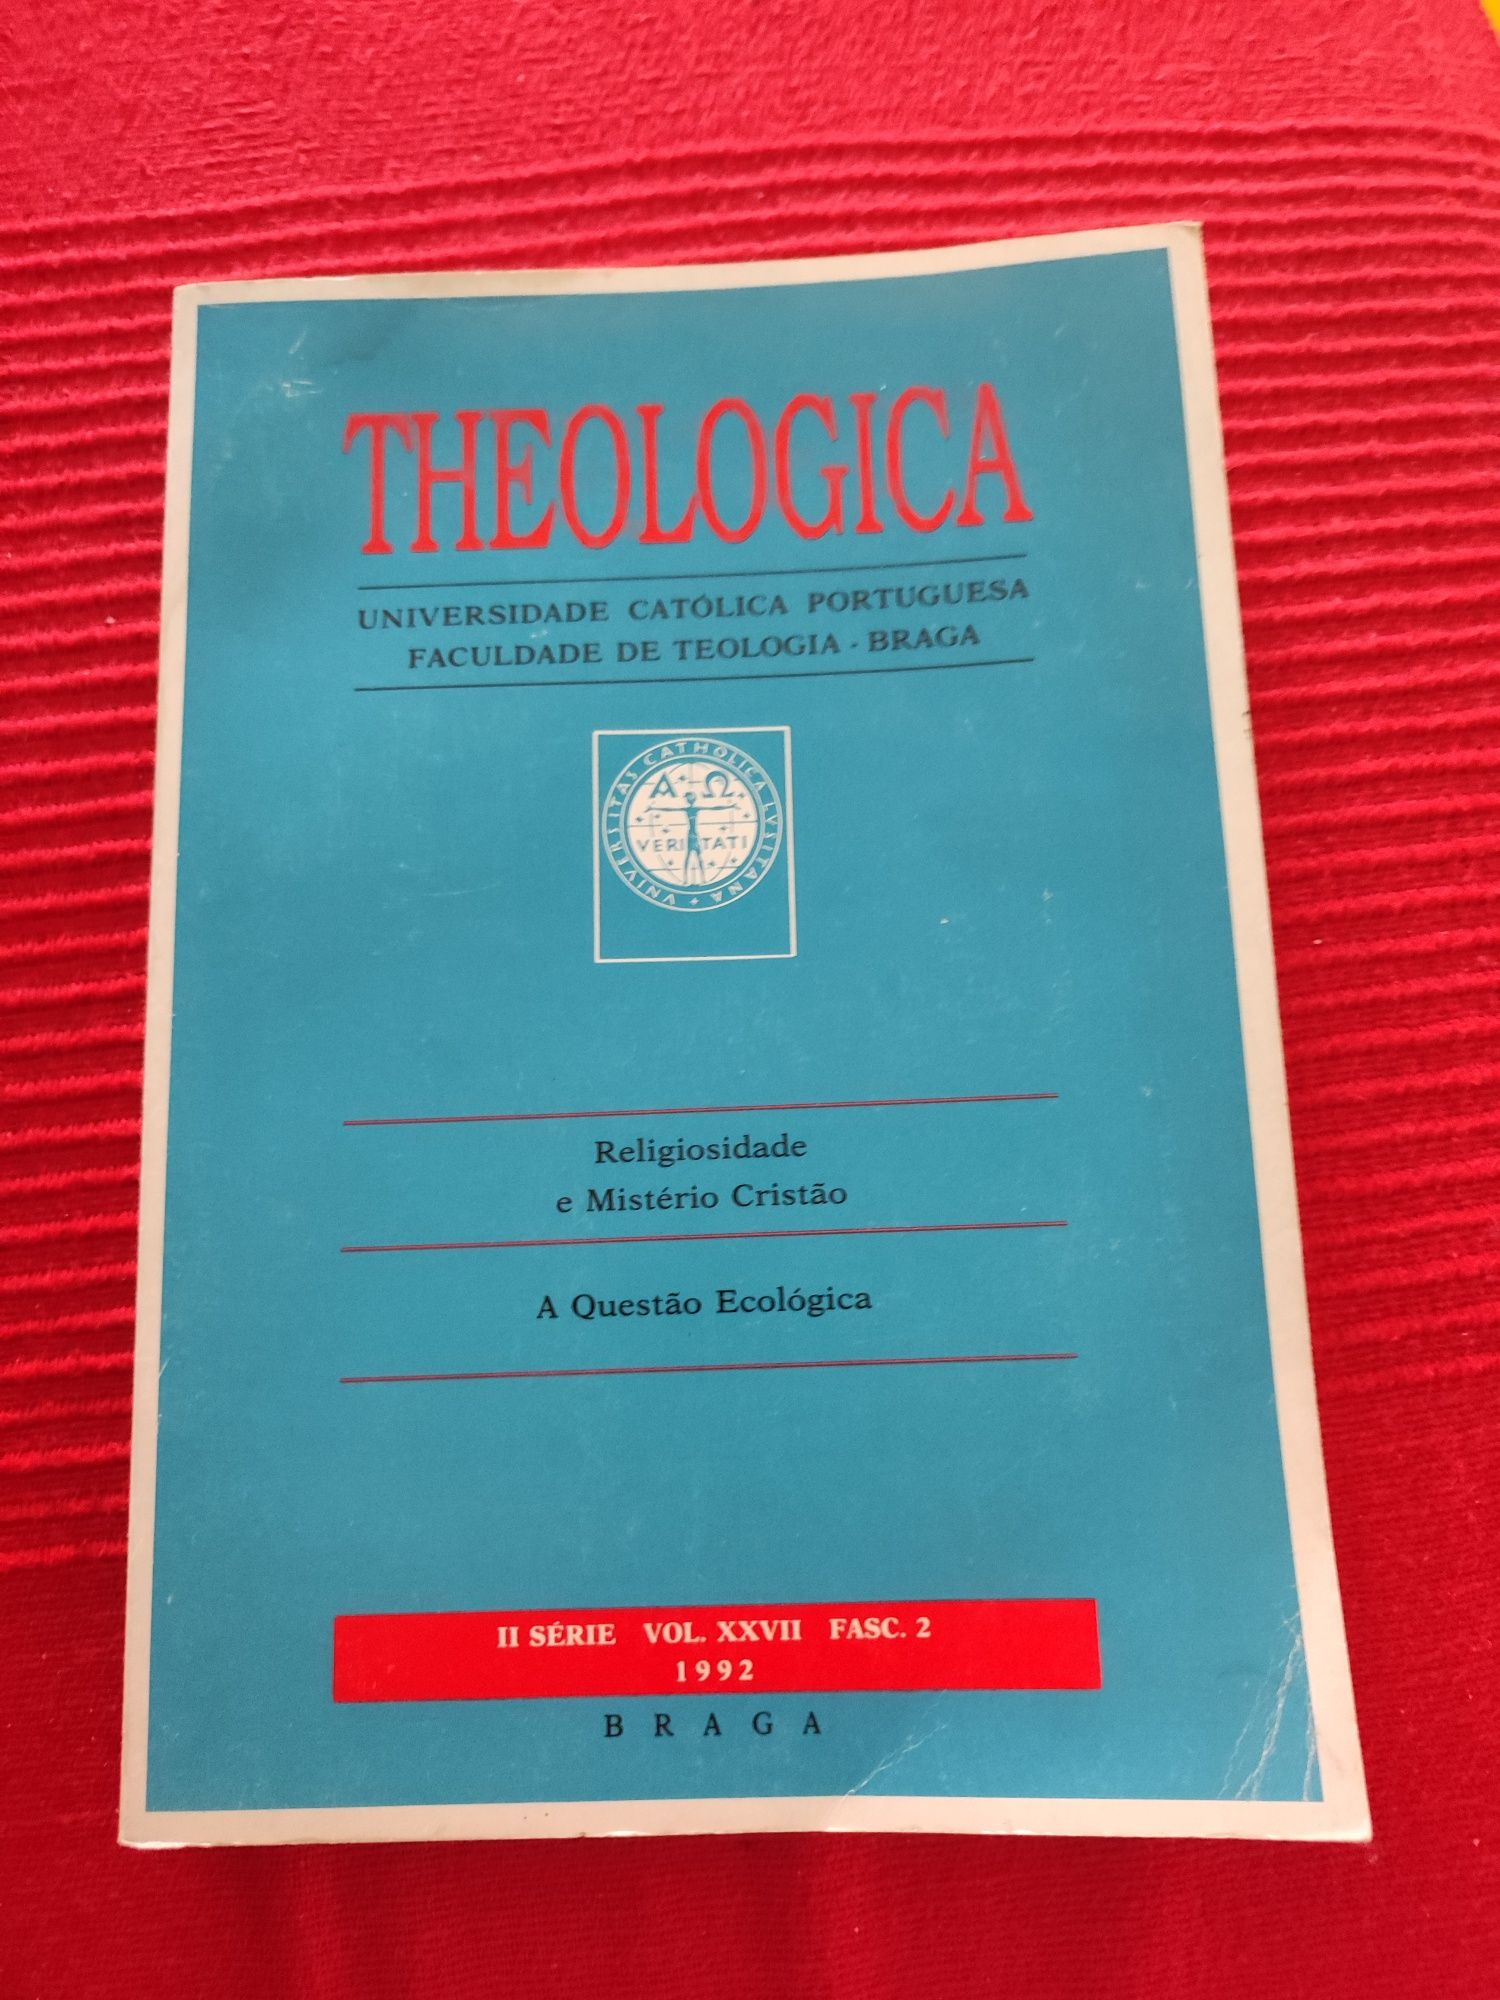 Theologica - 1992 - Univ católica portuguesa, faculdade de teologia